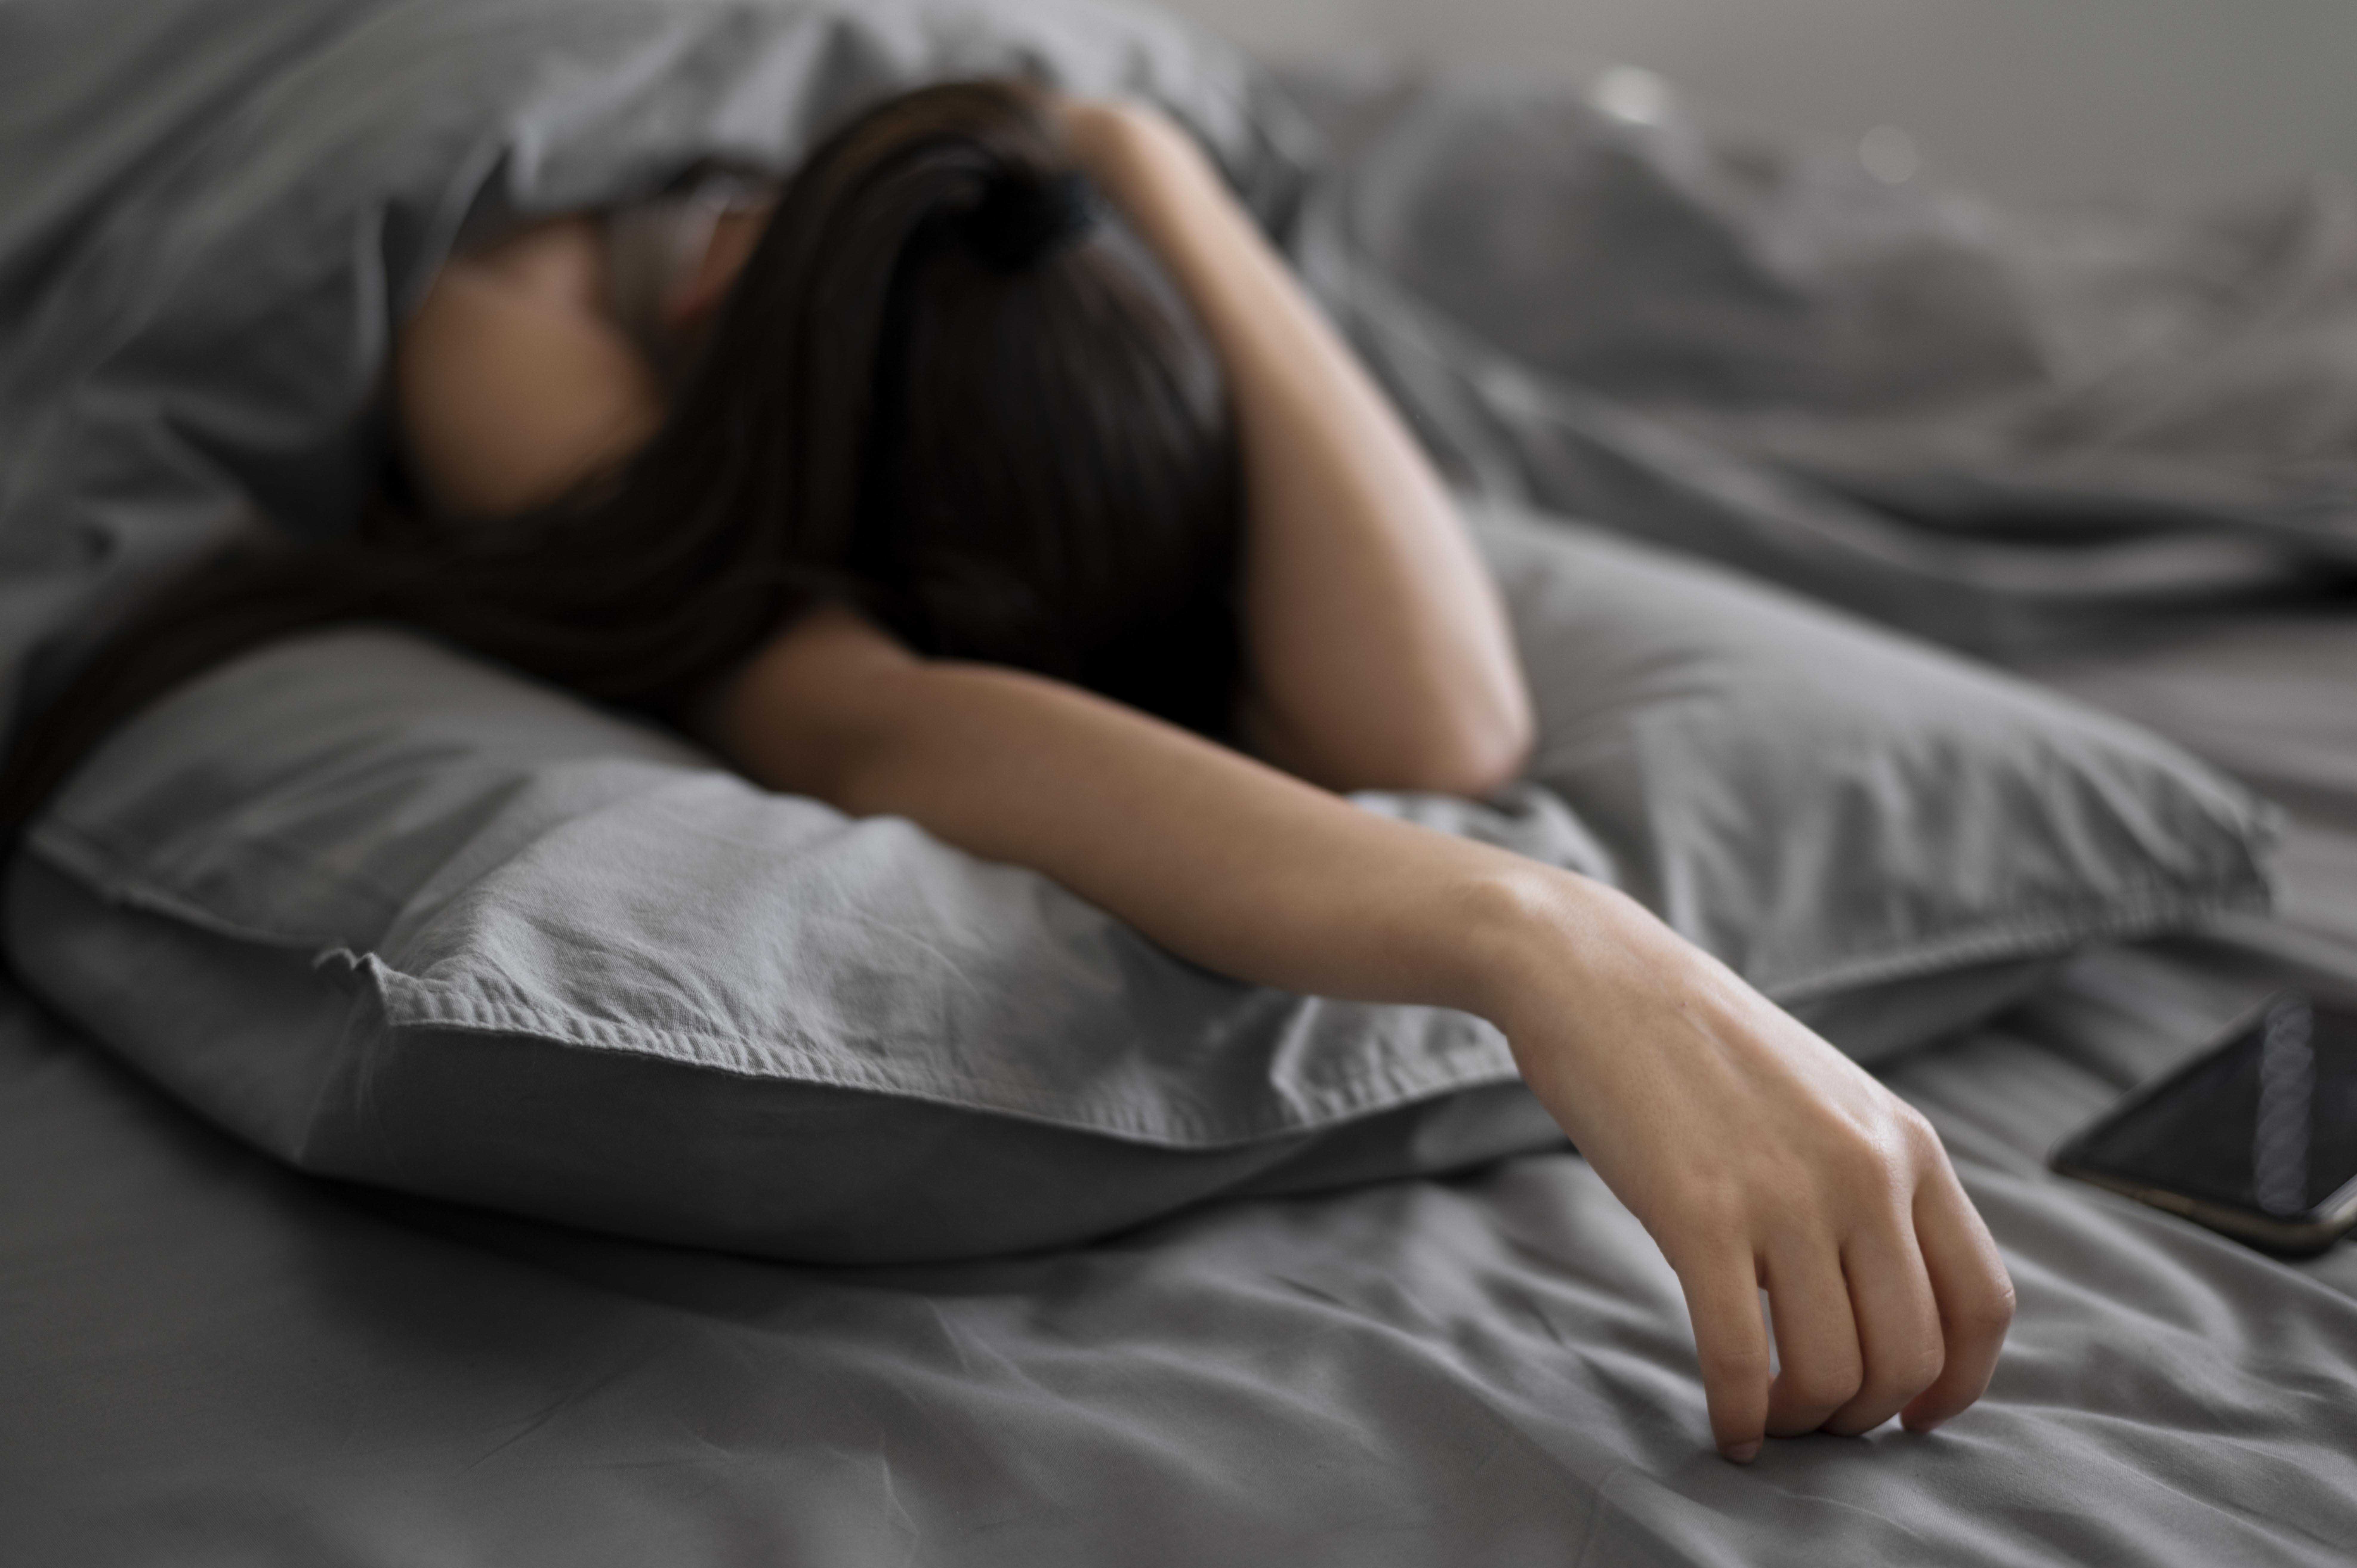 ลักษณะแบบไหนที่เรียกว่านอนน้อย พร้อมแนะแต่ละช่วงวัยควรนอนเท่าไรดี